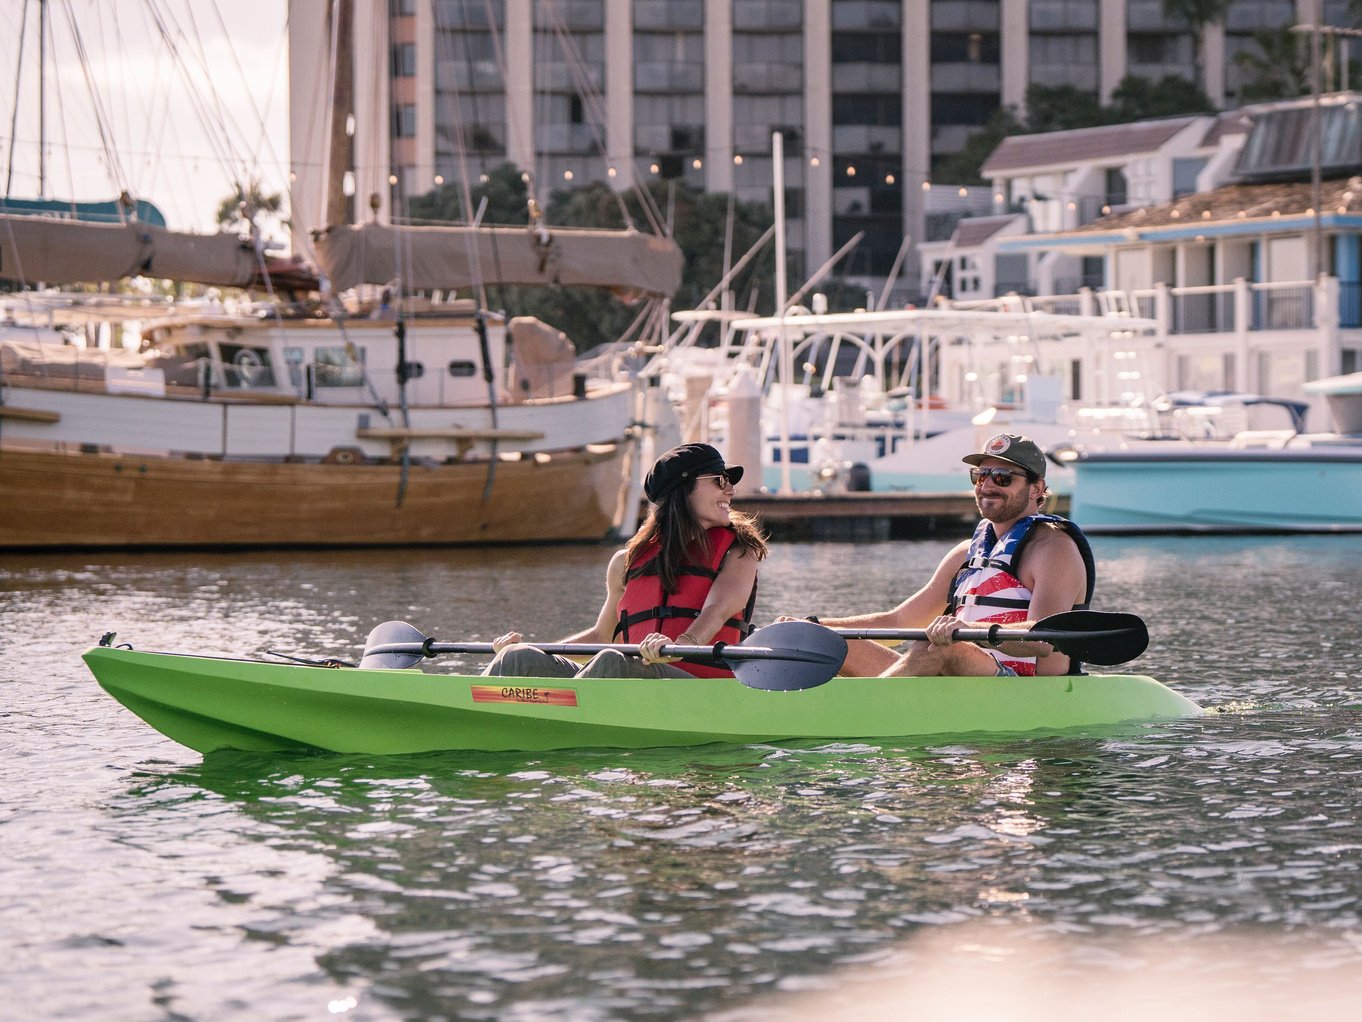 Mission Bay kayak rentals in San Diego